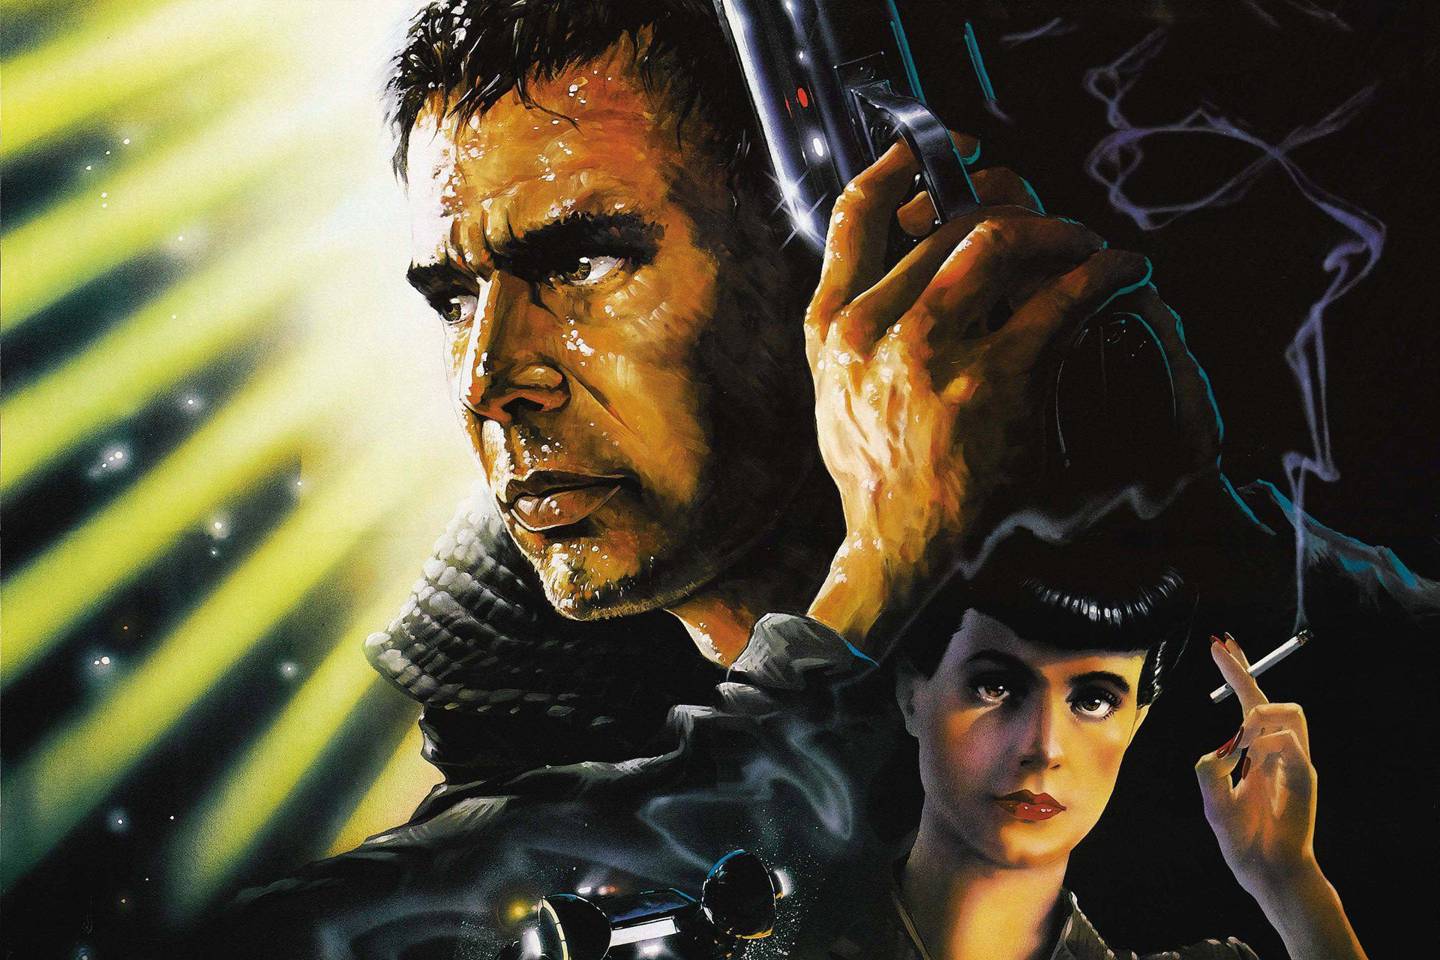 Online Blade Runner 2 Official Trailer Watch